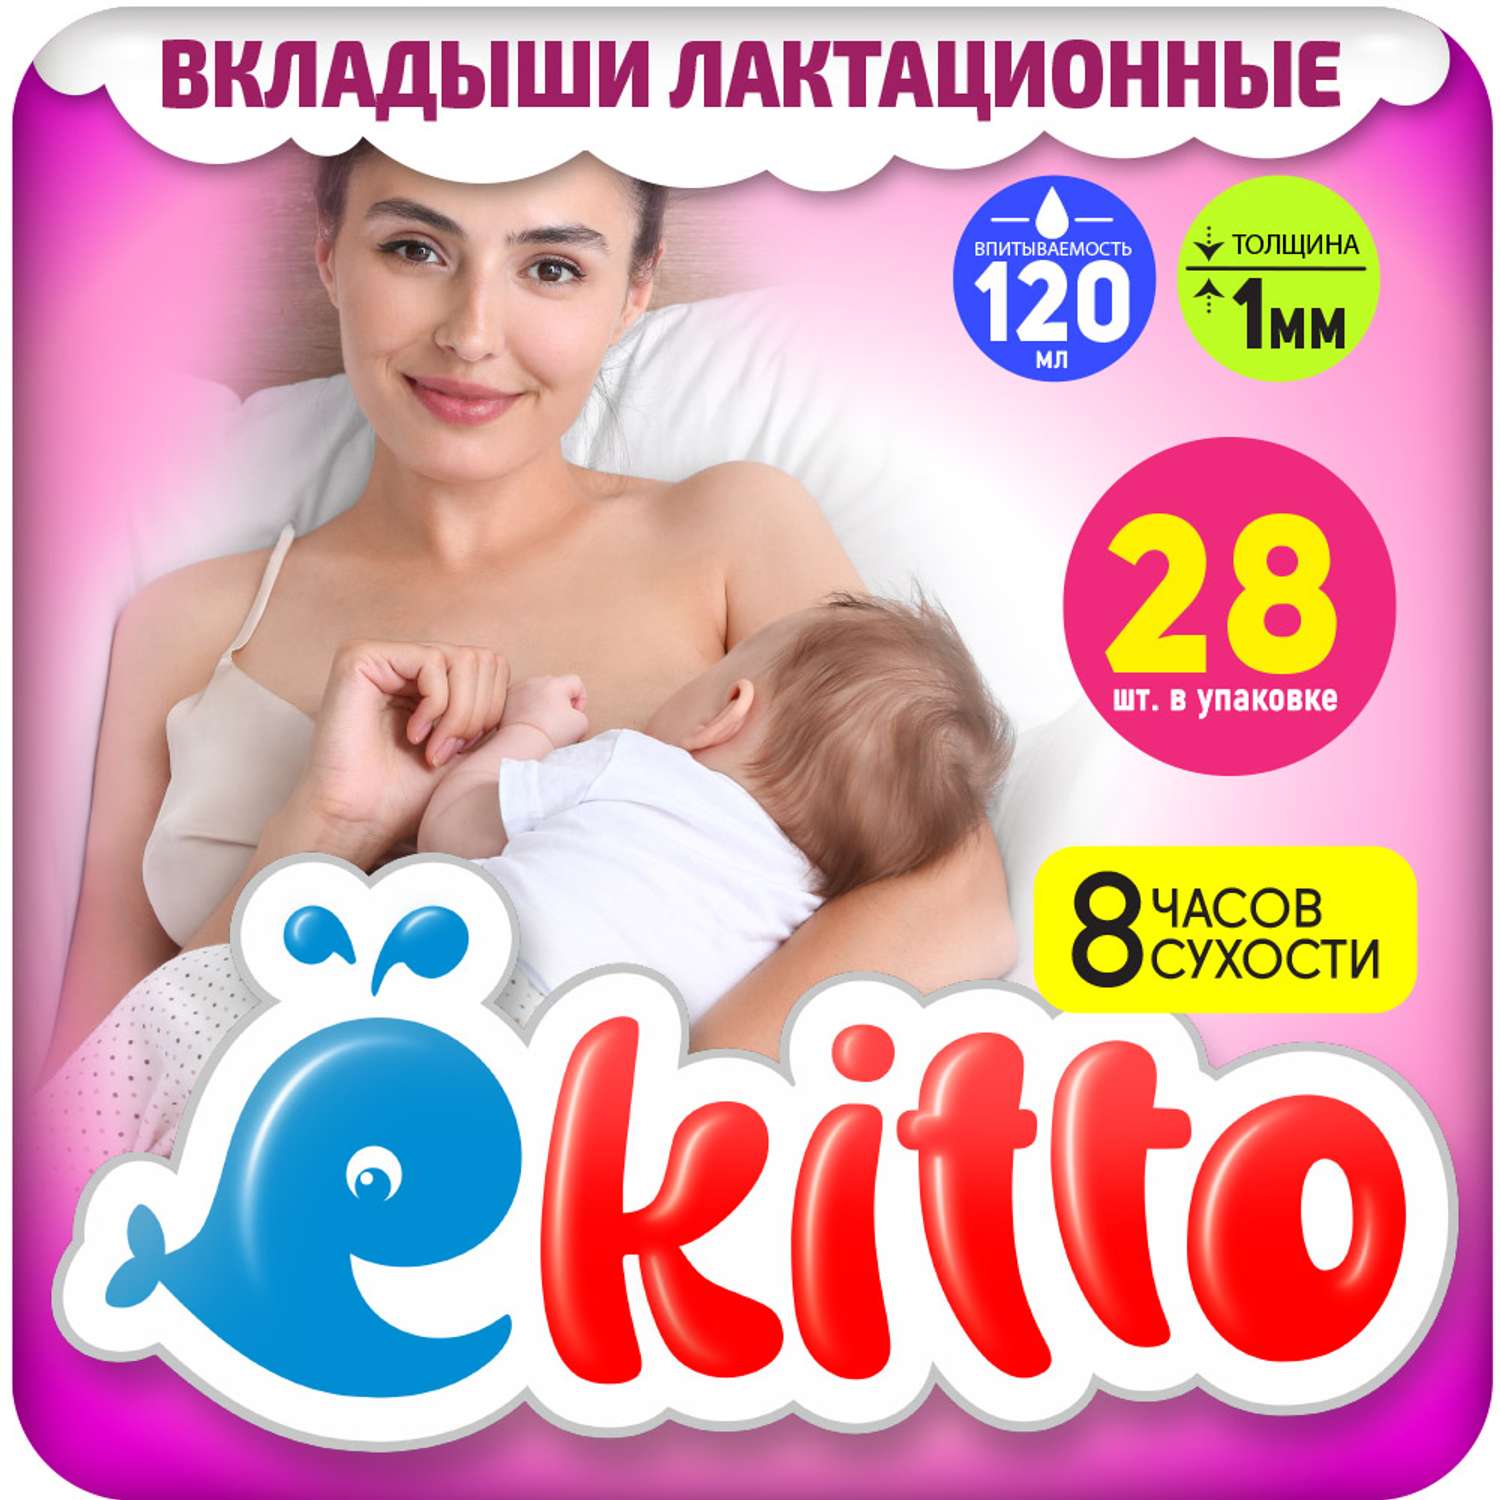 Вкладыши для груди Ekitto Лактационные 28 шт Е28 - фото 1